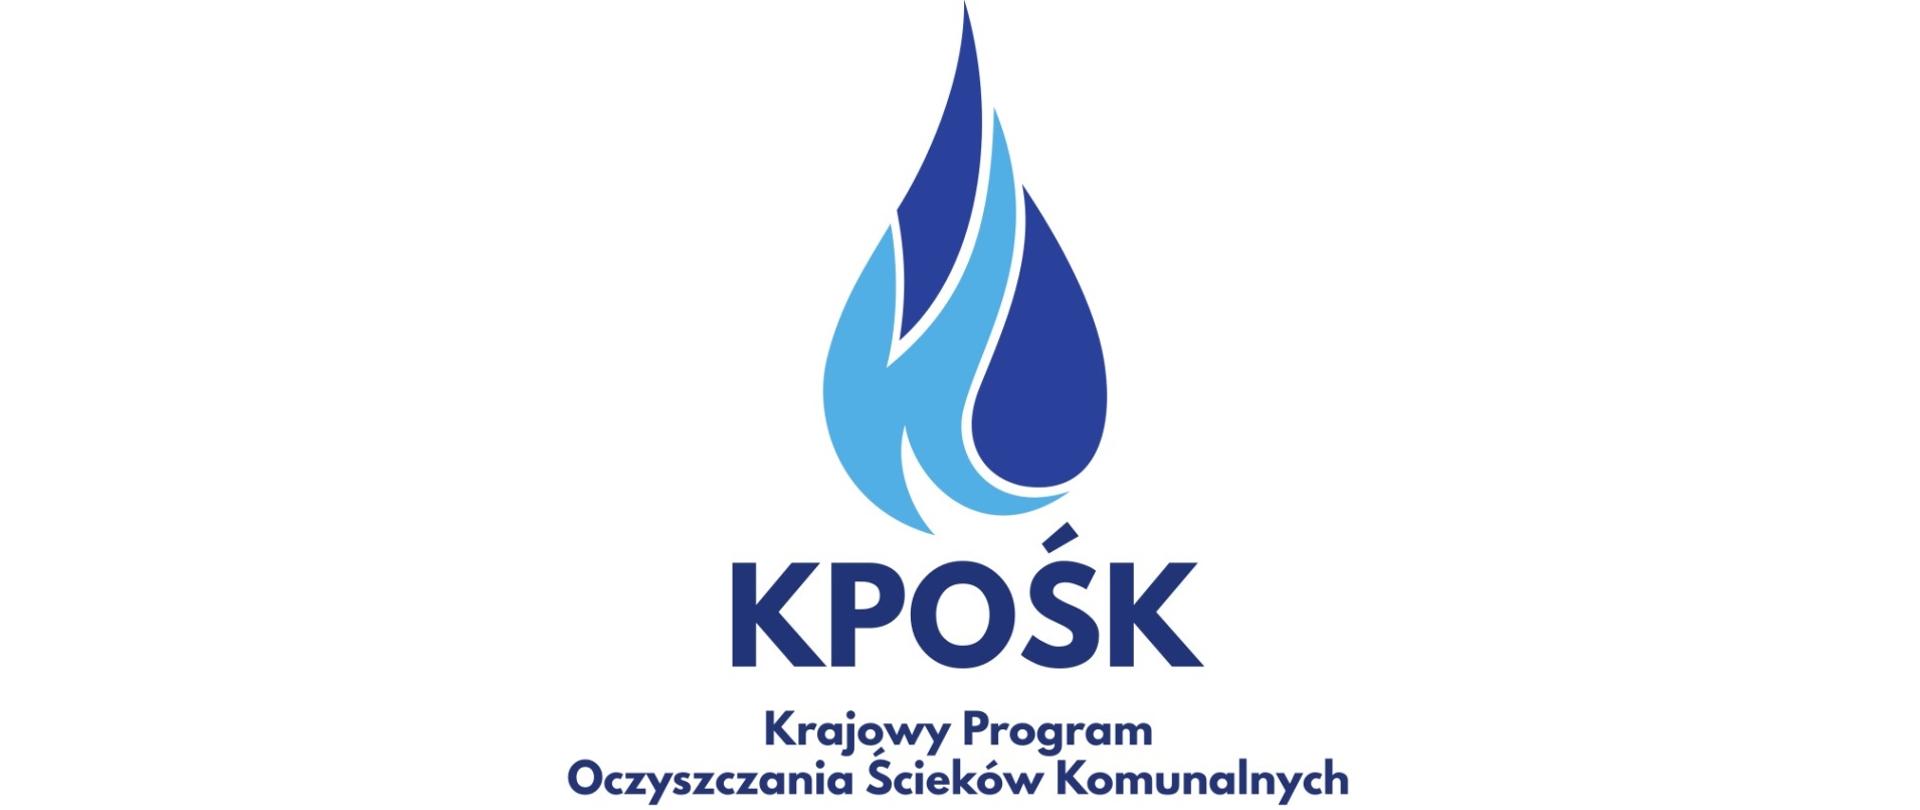 Logo Krajowego Programu Oczyszczania Ścieków Komunalnych - kropla zbudowana z litery k i skrót KPOŚK.